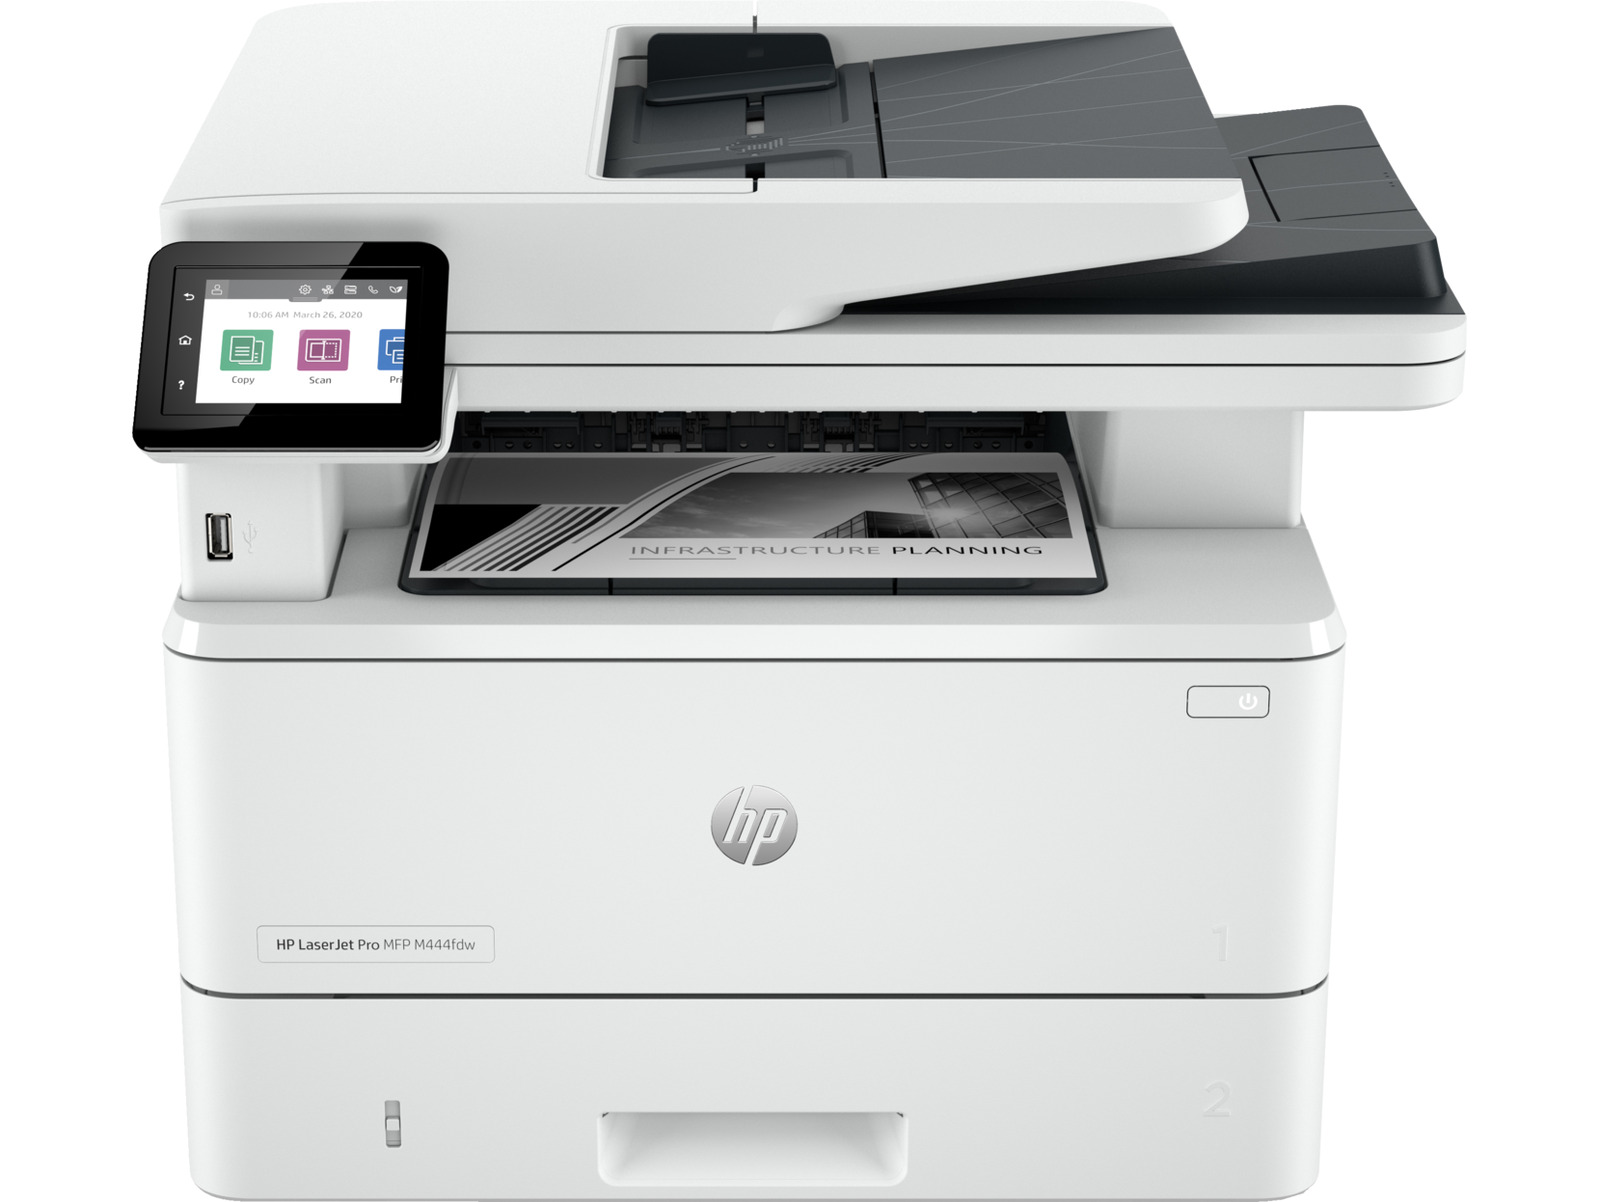 HP LaserJet Pro MFP 4101fdw Laser Printer, Black And White Mobile Print, Copy,